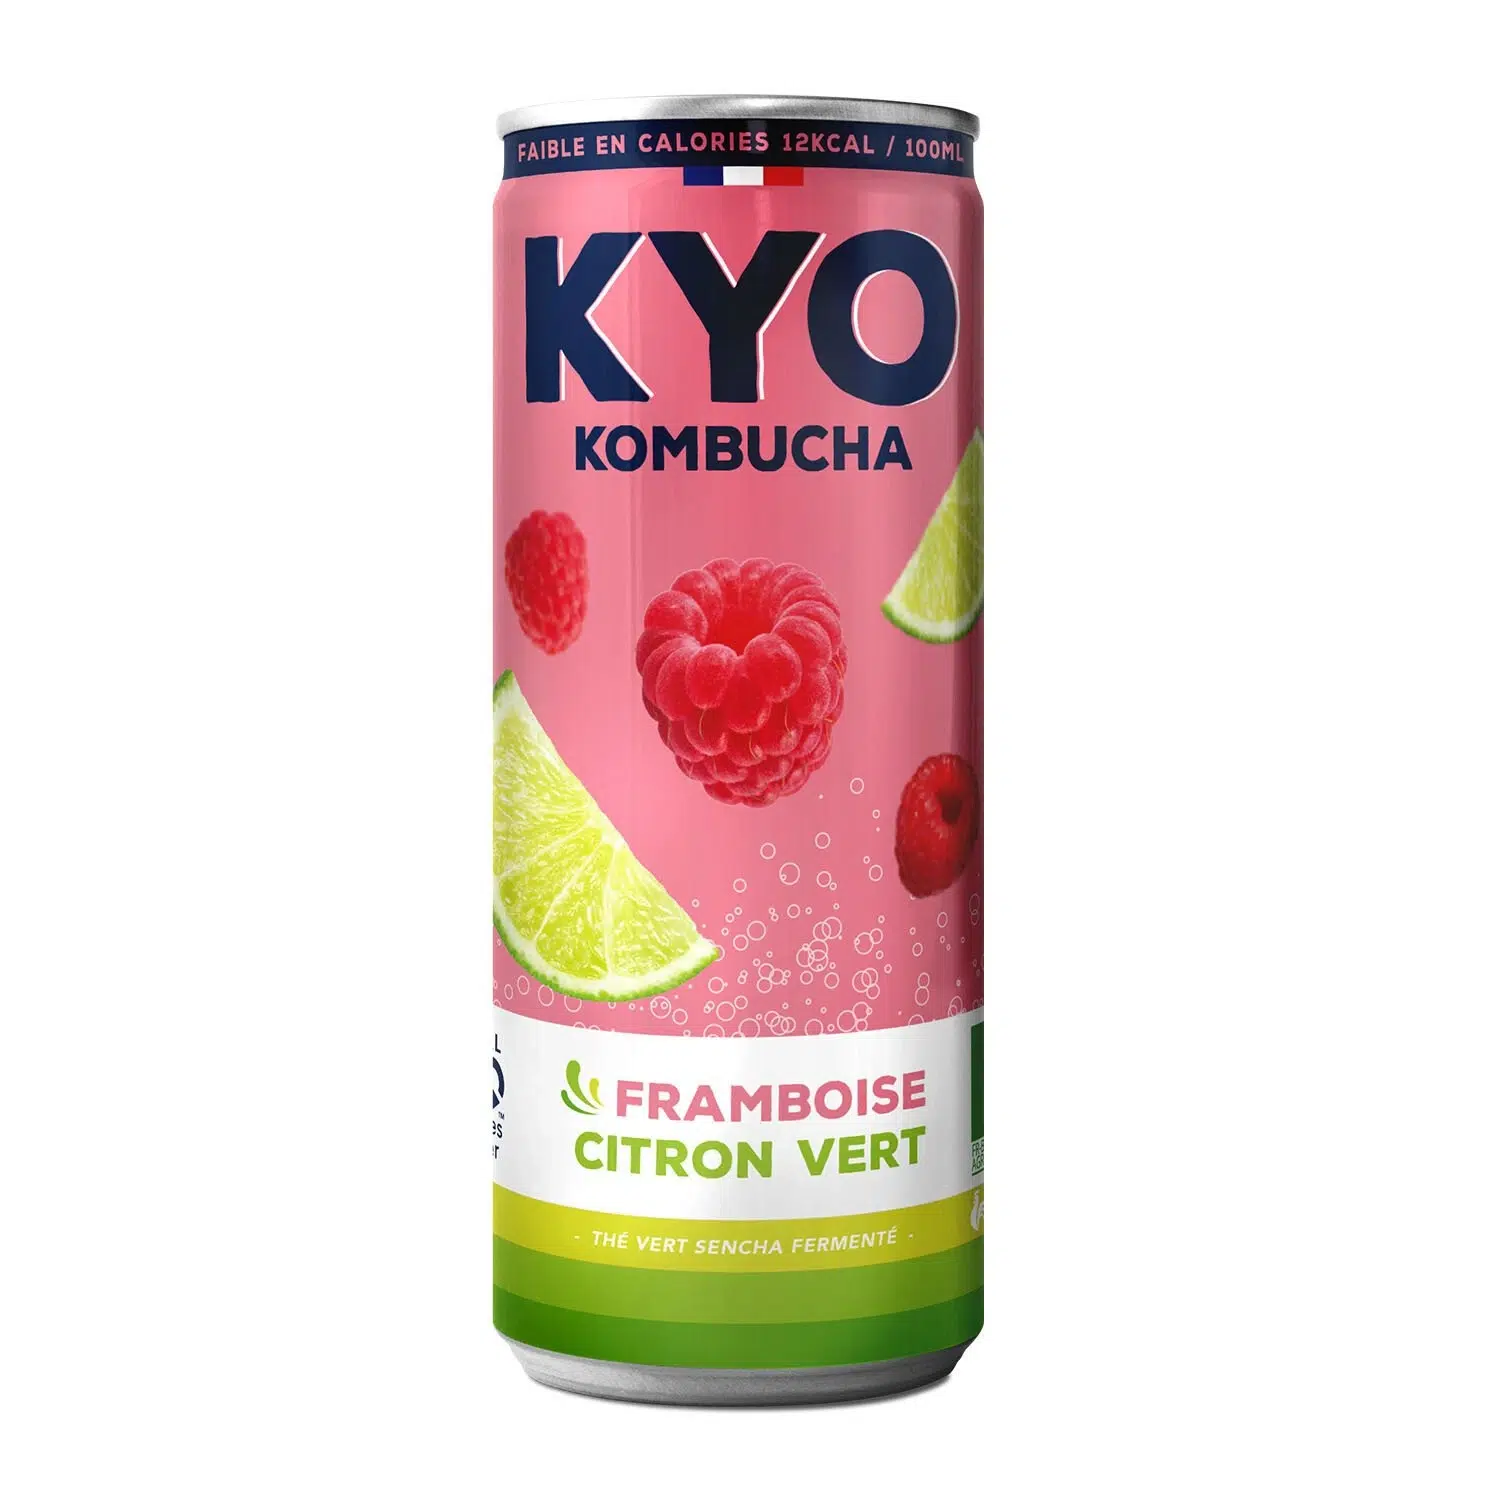 Kyo, Kombucha, Framboise & Citron Vert, 330ml